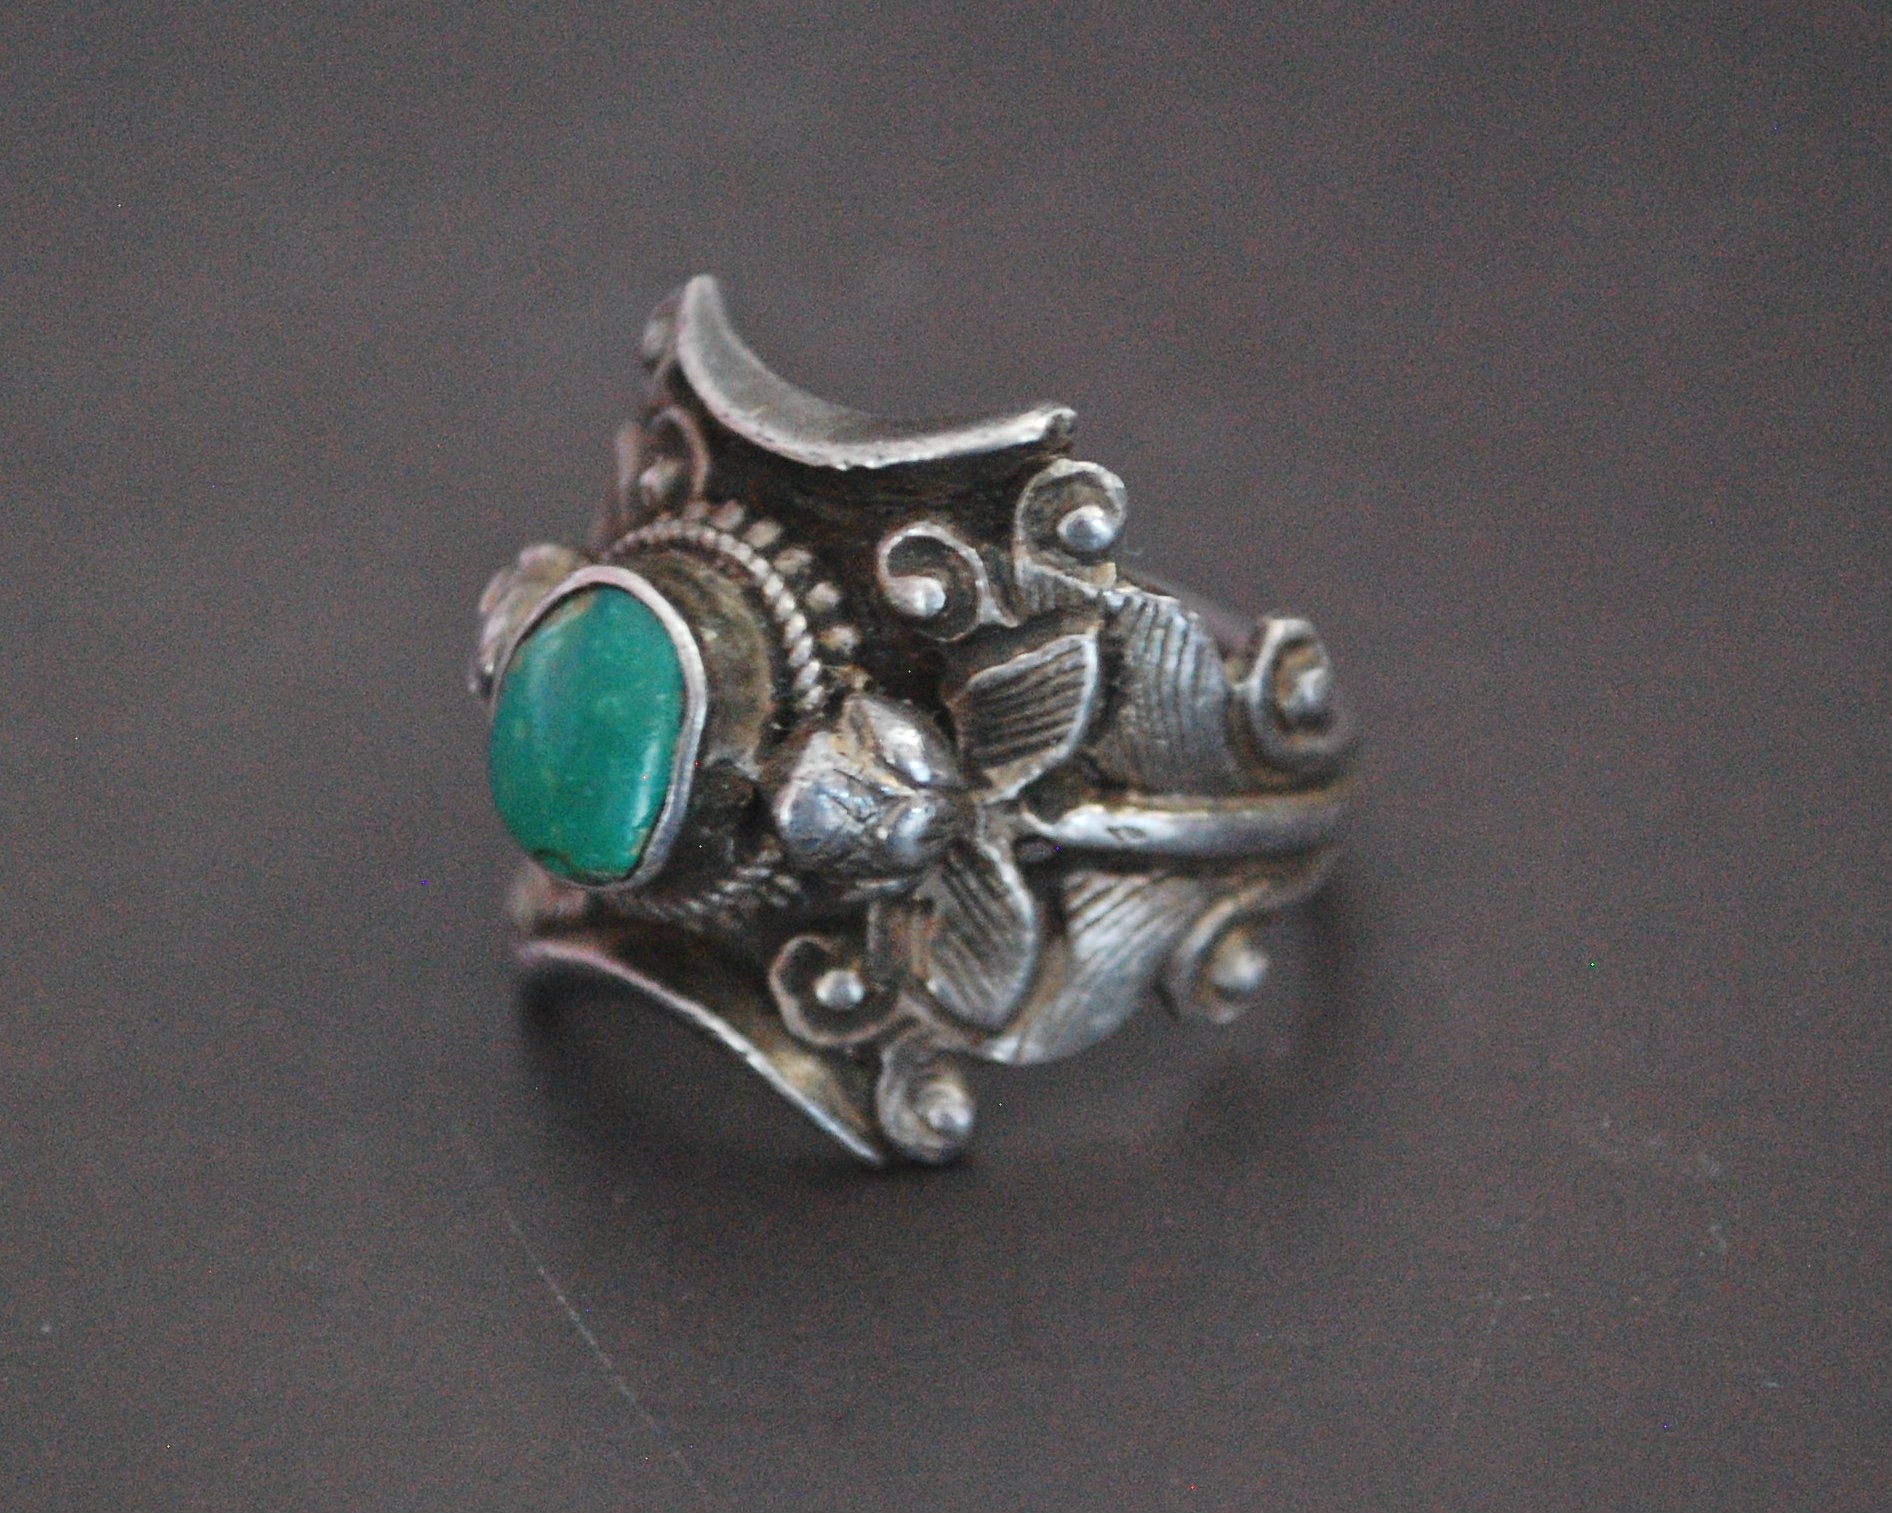 Nepali Turquoise Saddle Ring - Size 7